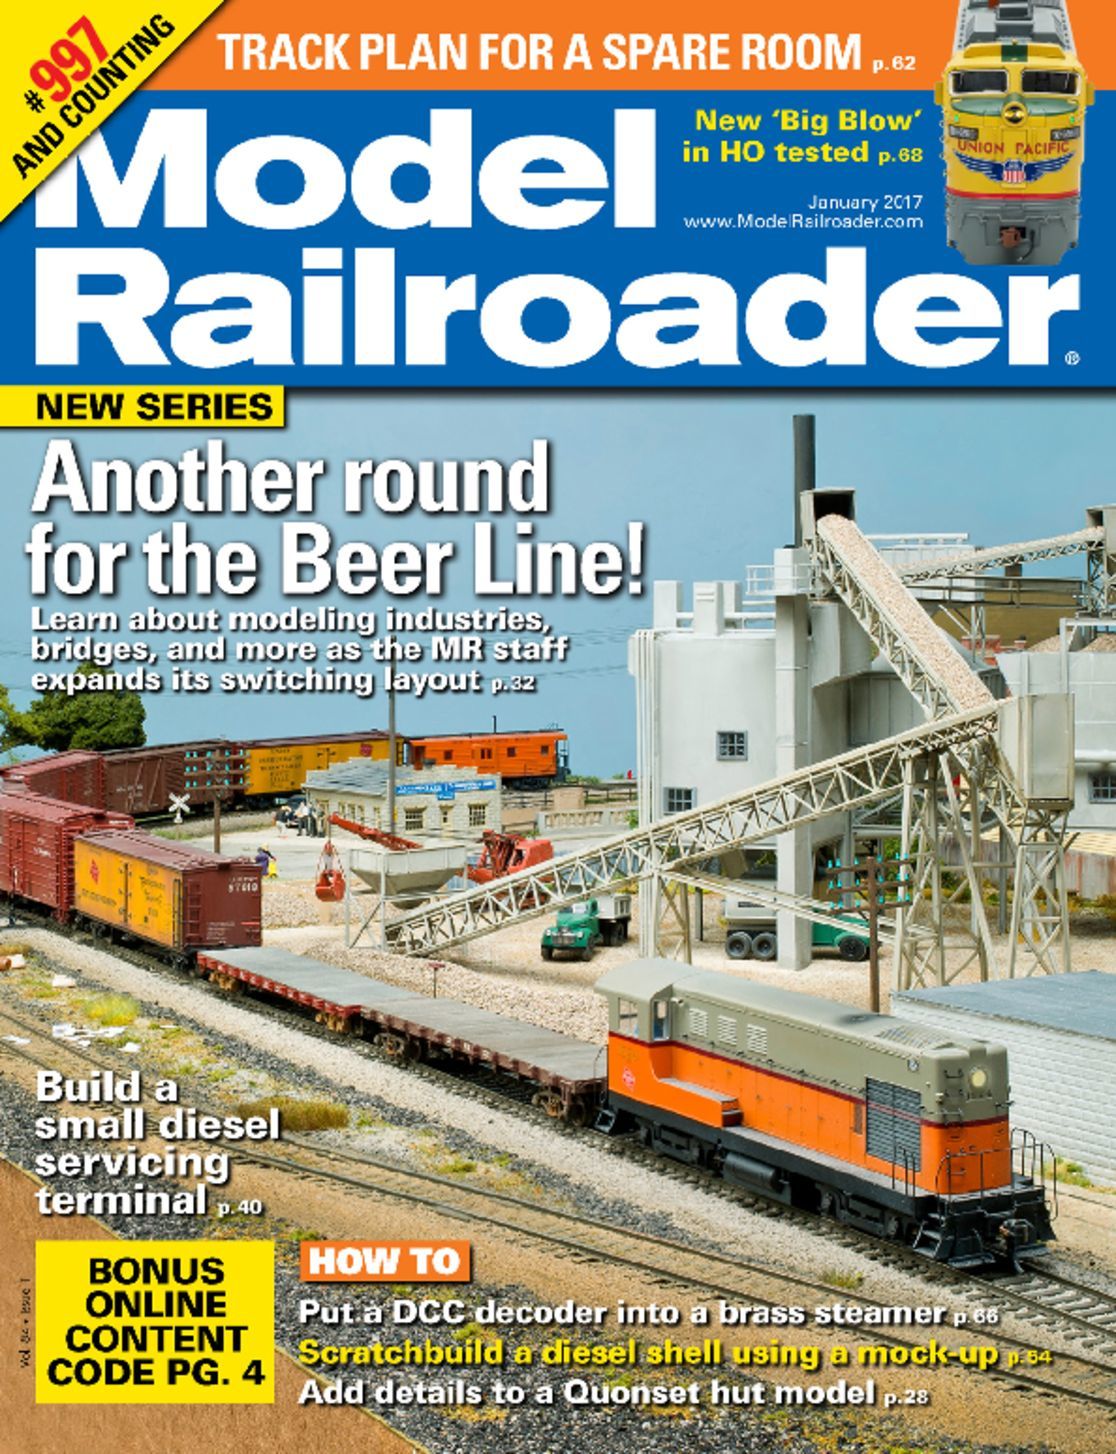 Model Railroader Magazine - DiscountMags.com